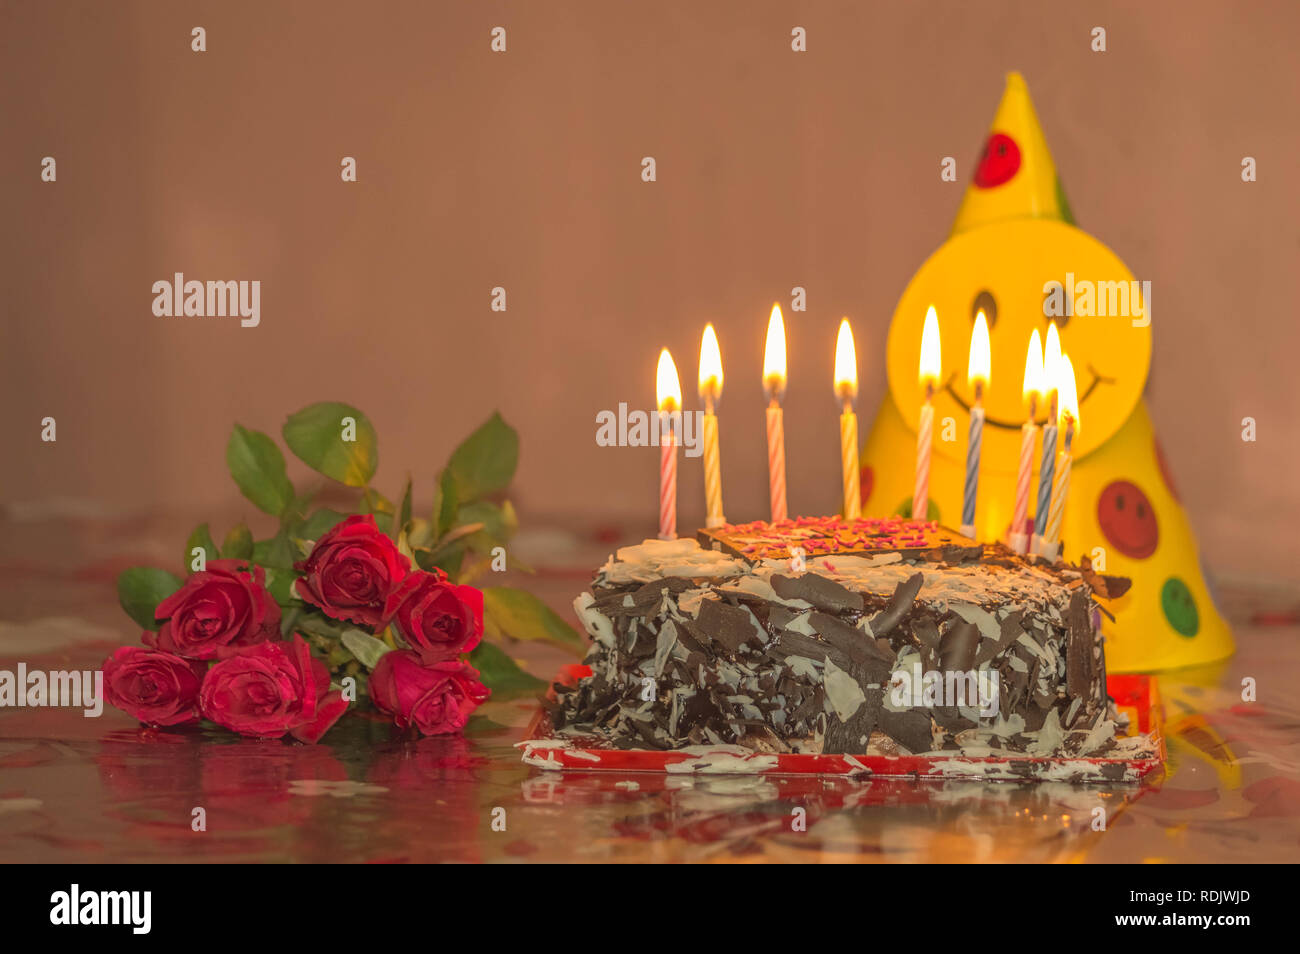 Bougies D'anniversaire Allumées Sur Le Gâteau Au Chocolat Photo stock -  Image du étant, fête: 224830846